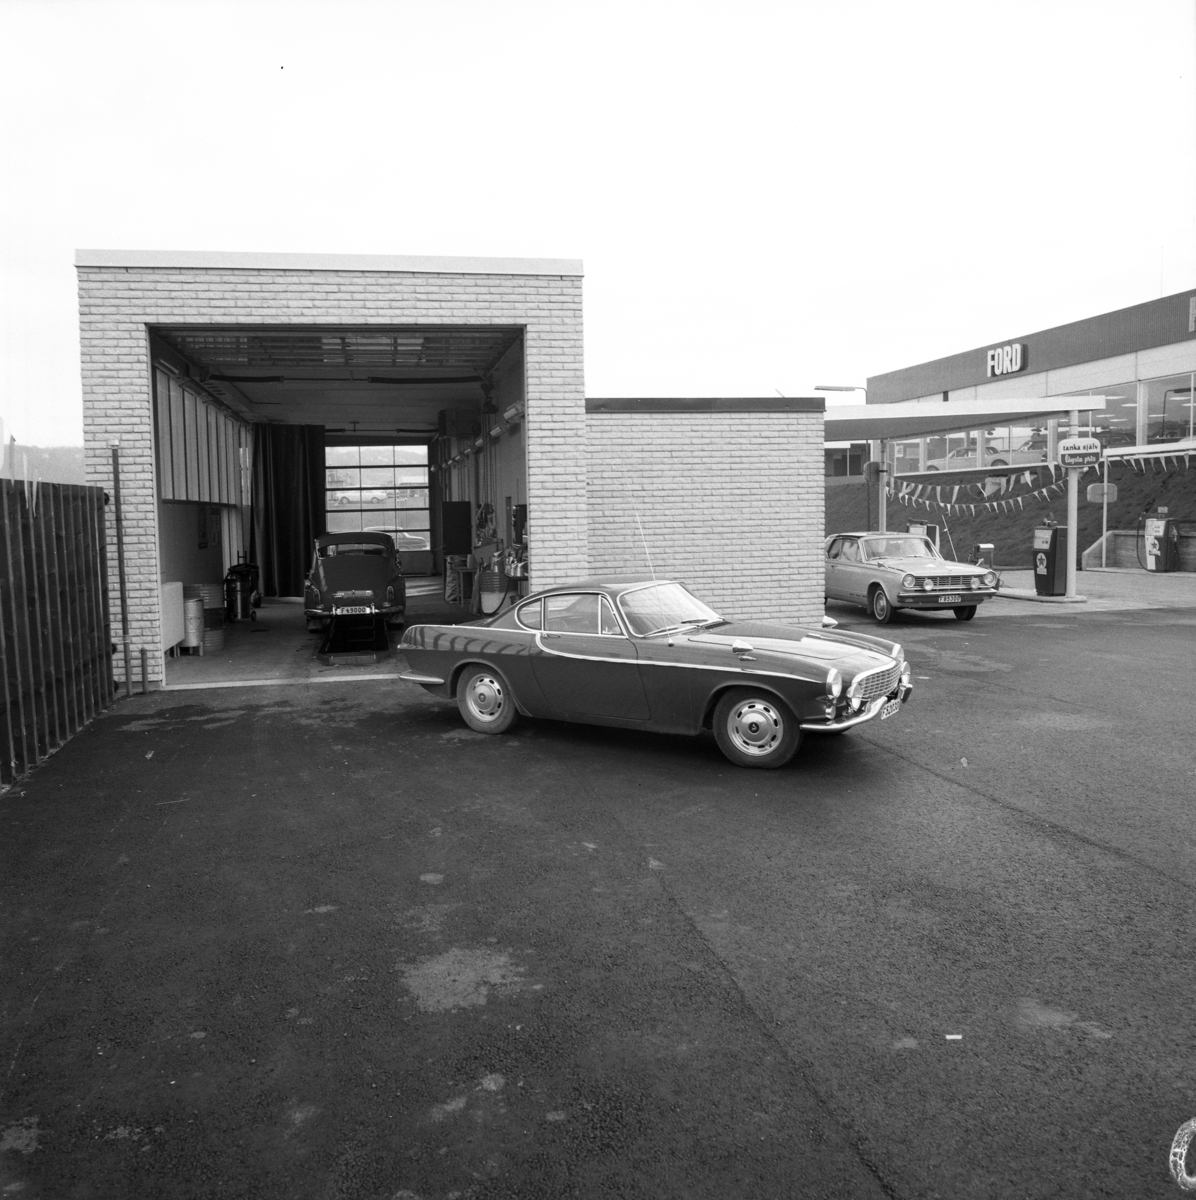 Den 28 maj 1968 öppnade MHF (Motorförarnas Helnykterhetsförbund) ett motell vid nuvarande Birkagatan mellan Huskvarna och Jönköping. Intill huvudbyggnaden, som innehöll reception,  restaurang och hotellrum, fanns låga övernattningslägenheter med carport för bilen. Dessa hade byggts av bilföretagaren Mats Hultgren och kom att ingå i motellet. Idag är det ombyggt till studentbostäder.